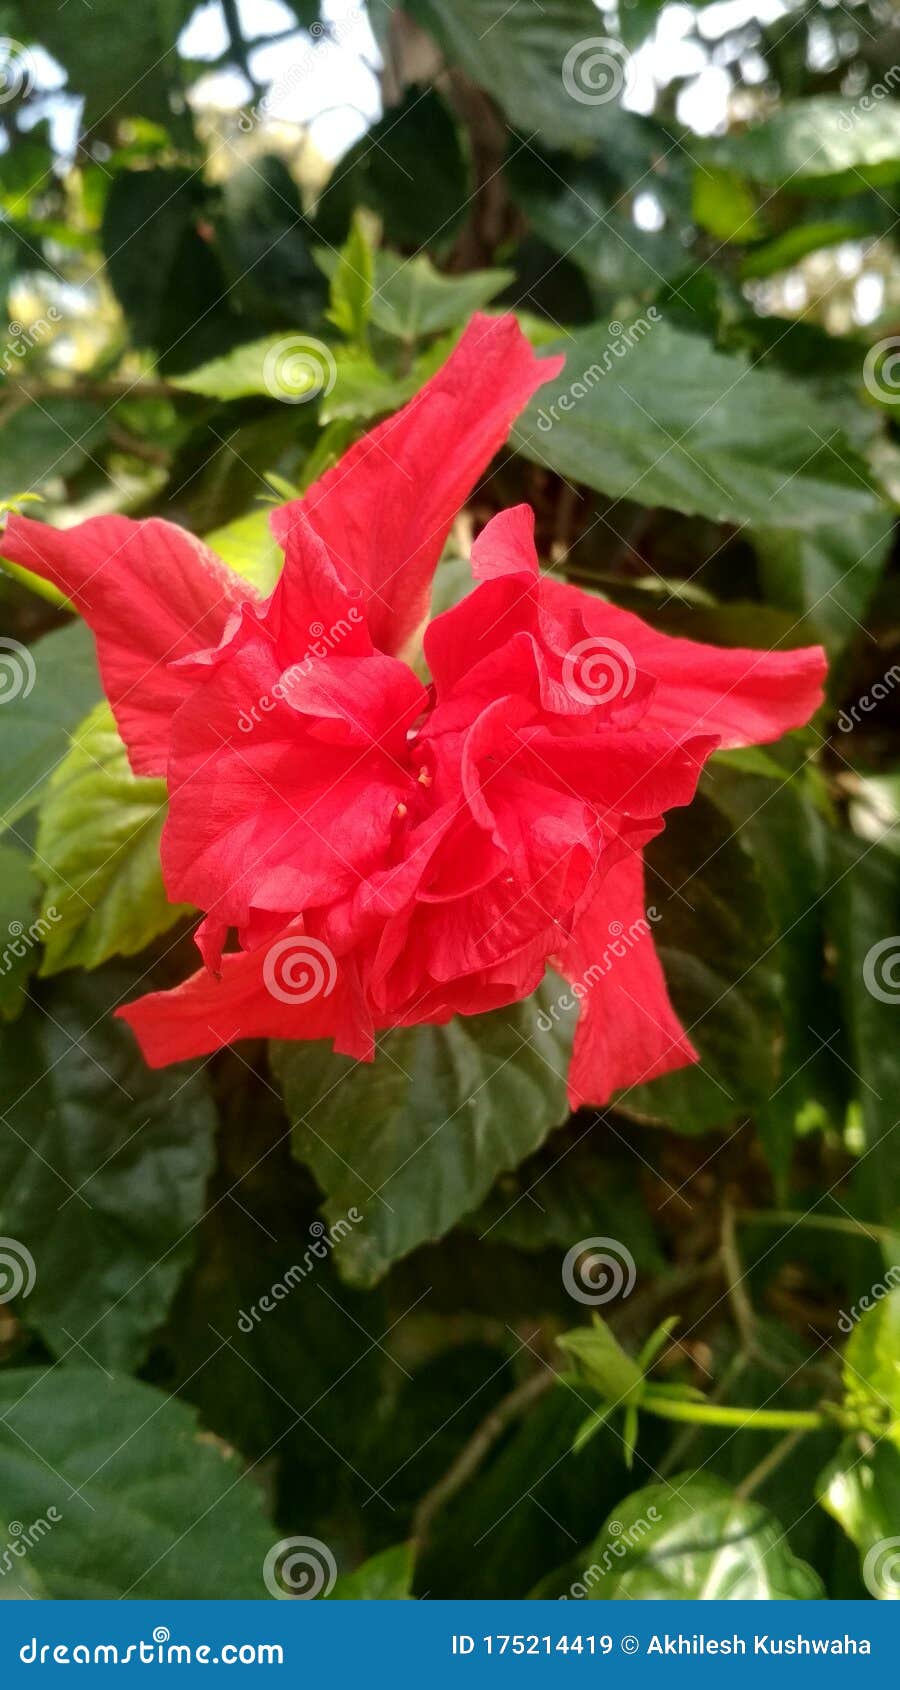 Fleur De Jagré De Couleur Rouge Avec De Nombreux Village De Kushinagar  Corolle Et De Feuille Verte Image stock - Image du rouge, corolle: 175214419